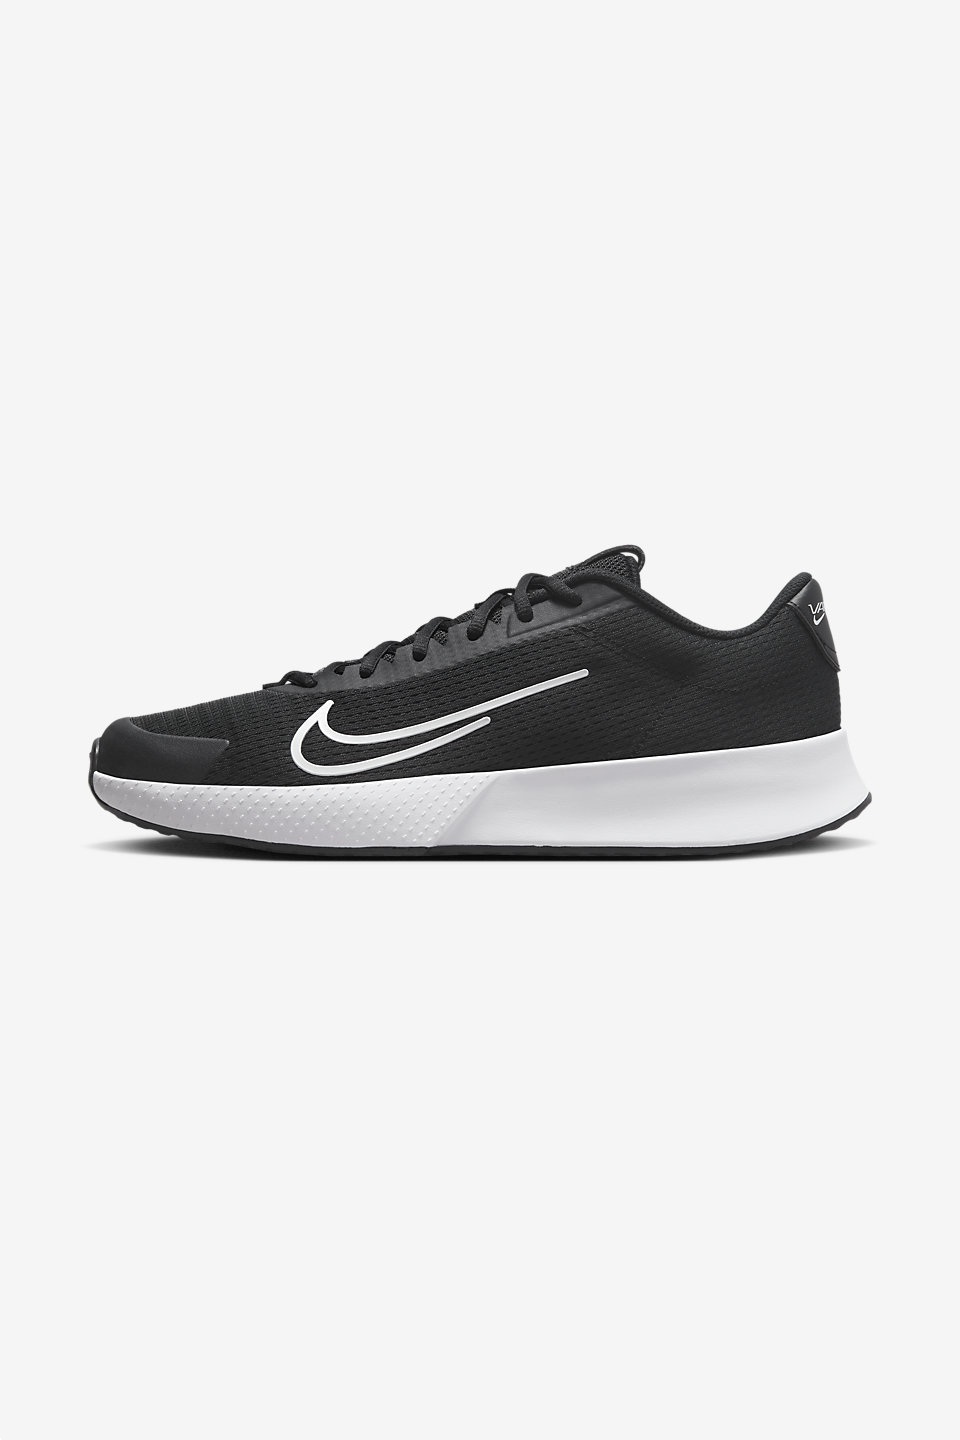 NIKE - NikeCourt Vapor Lite 2 Sert Kort Erkek Tenis Ayakkabısı